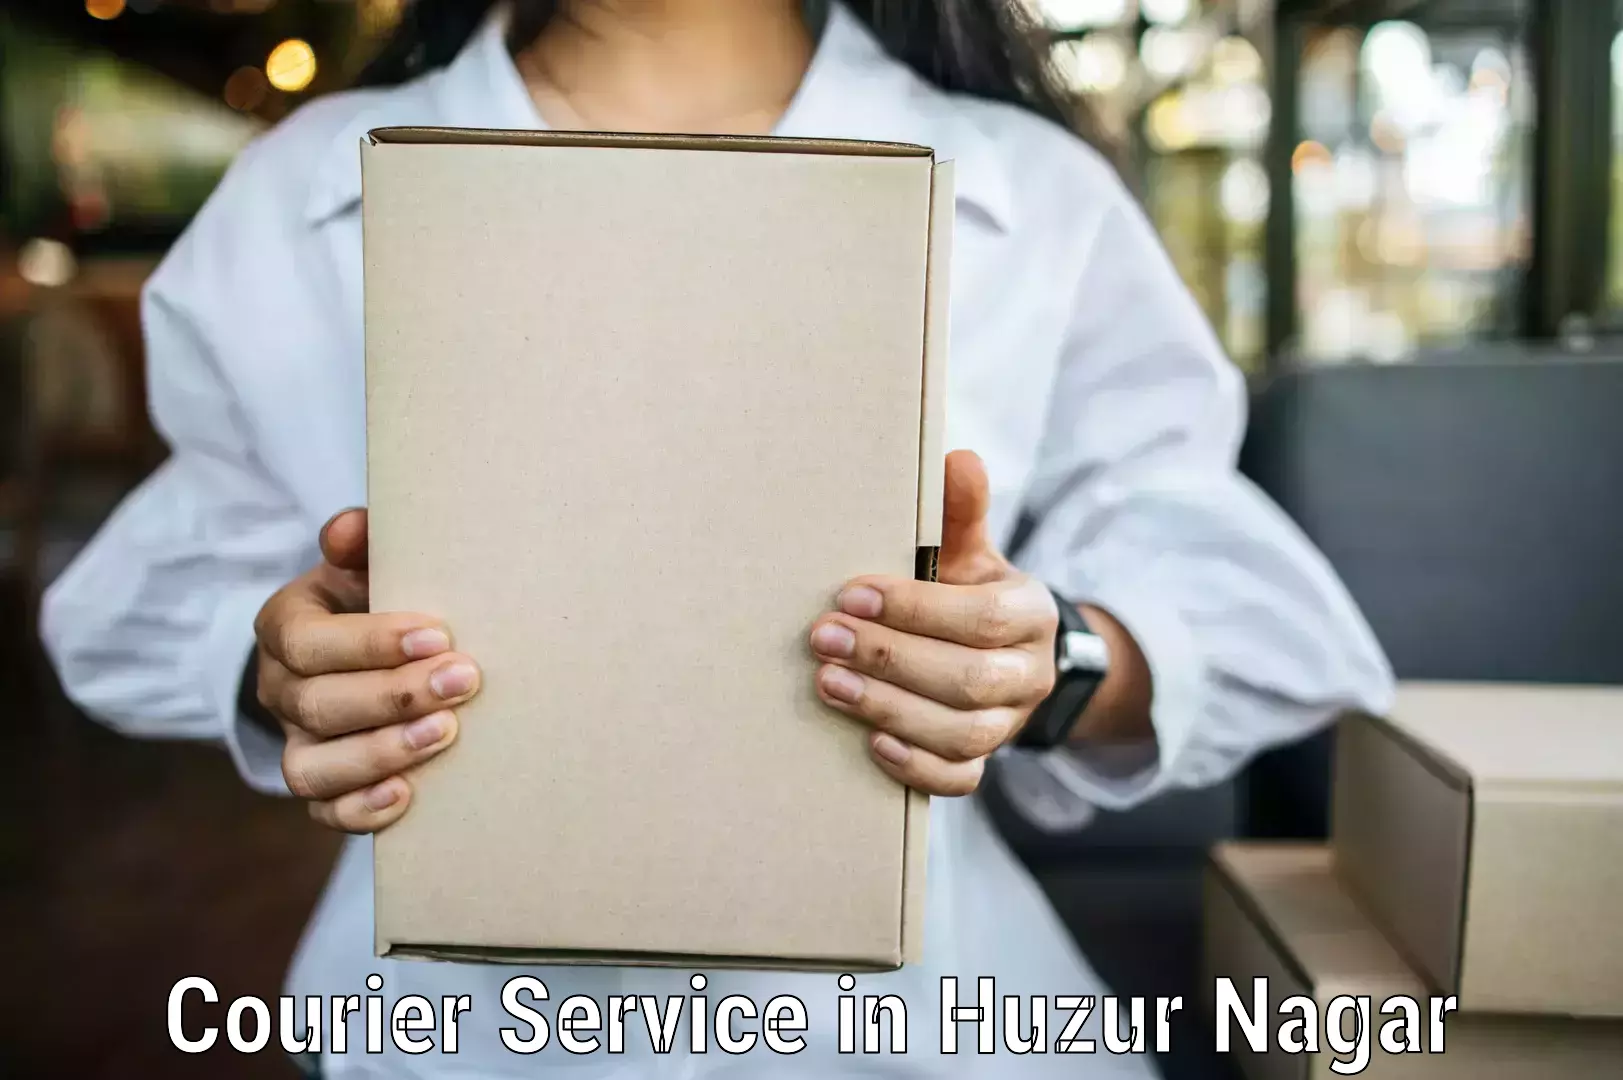 Medical delivery services in Huzur Nagar